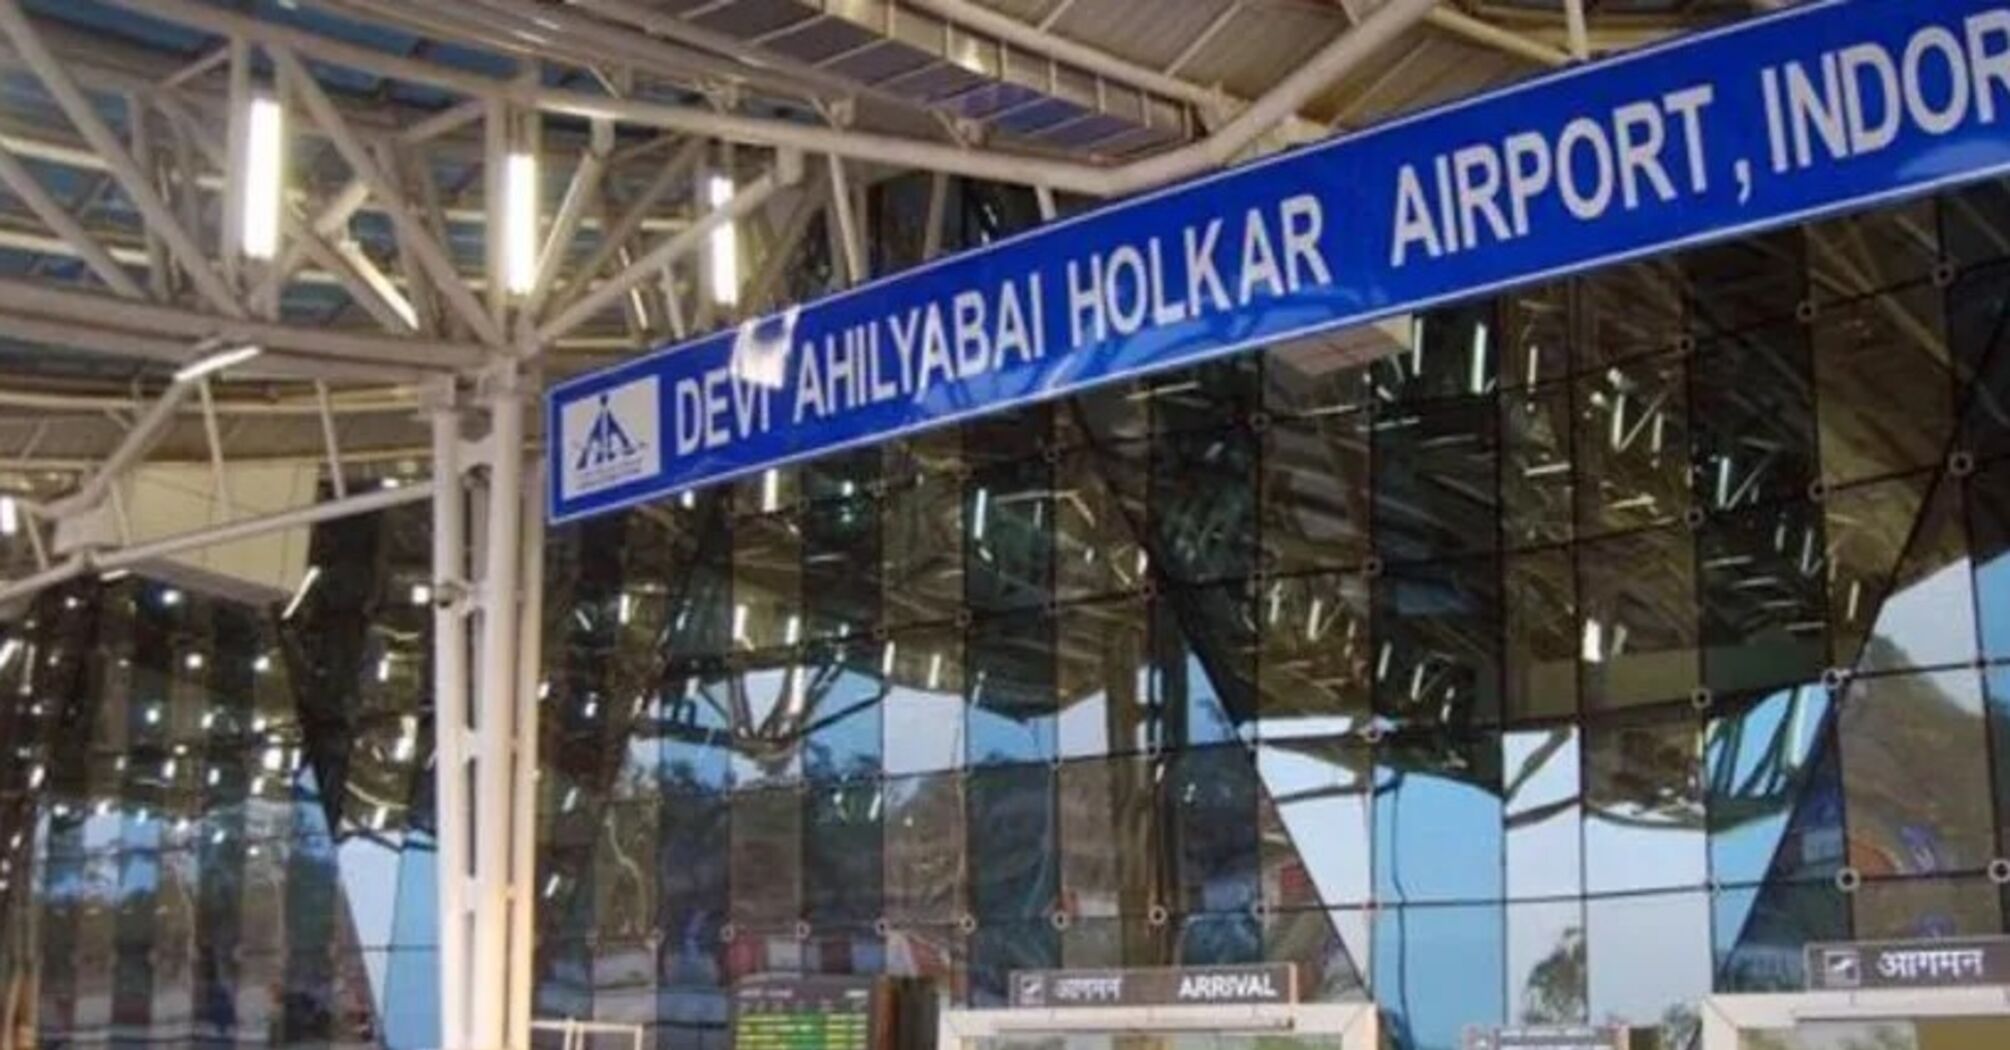 Міжнародний аеропорт Деві Ахілябай в Індорі почав приймати електронні візи